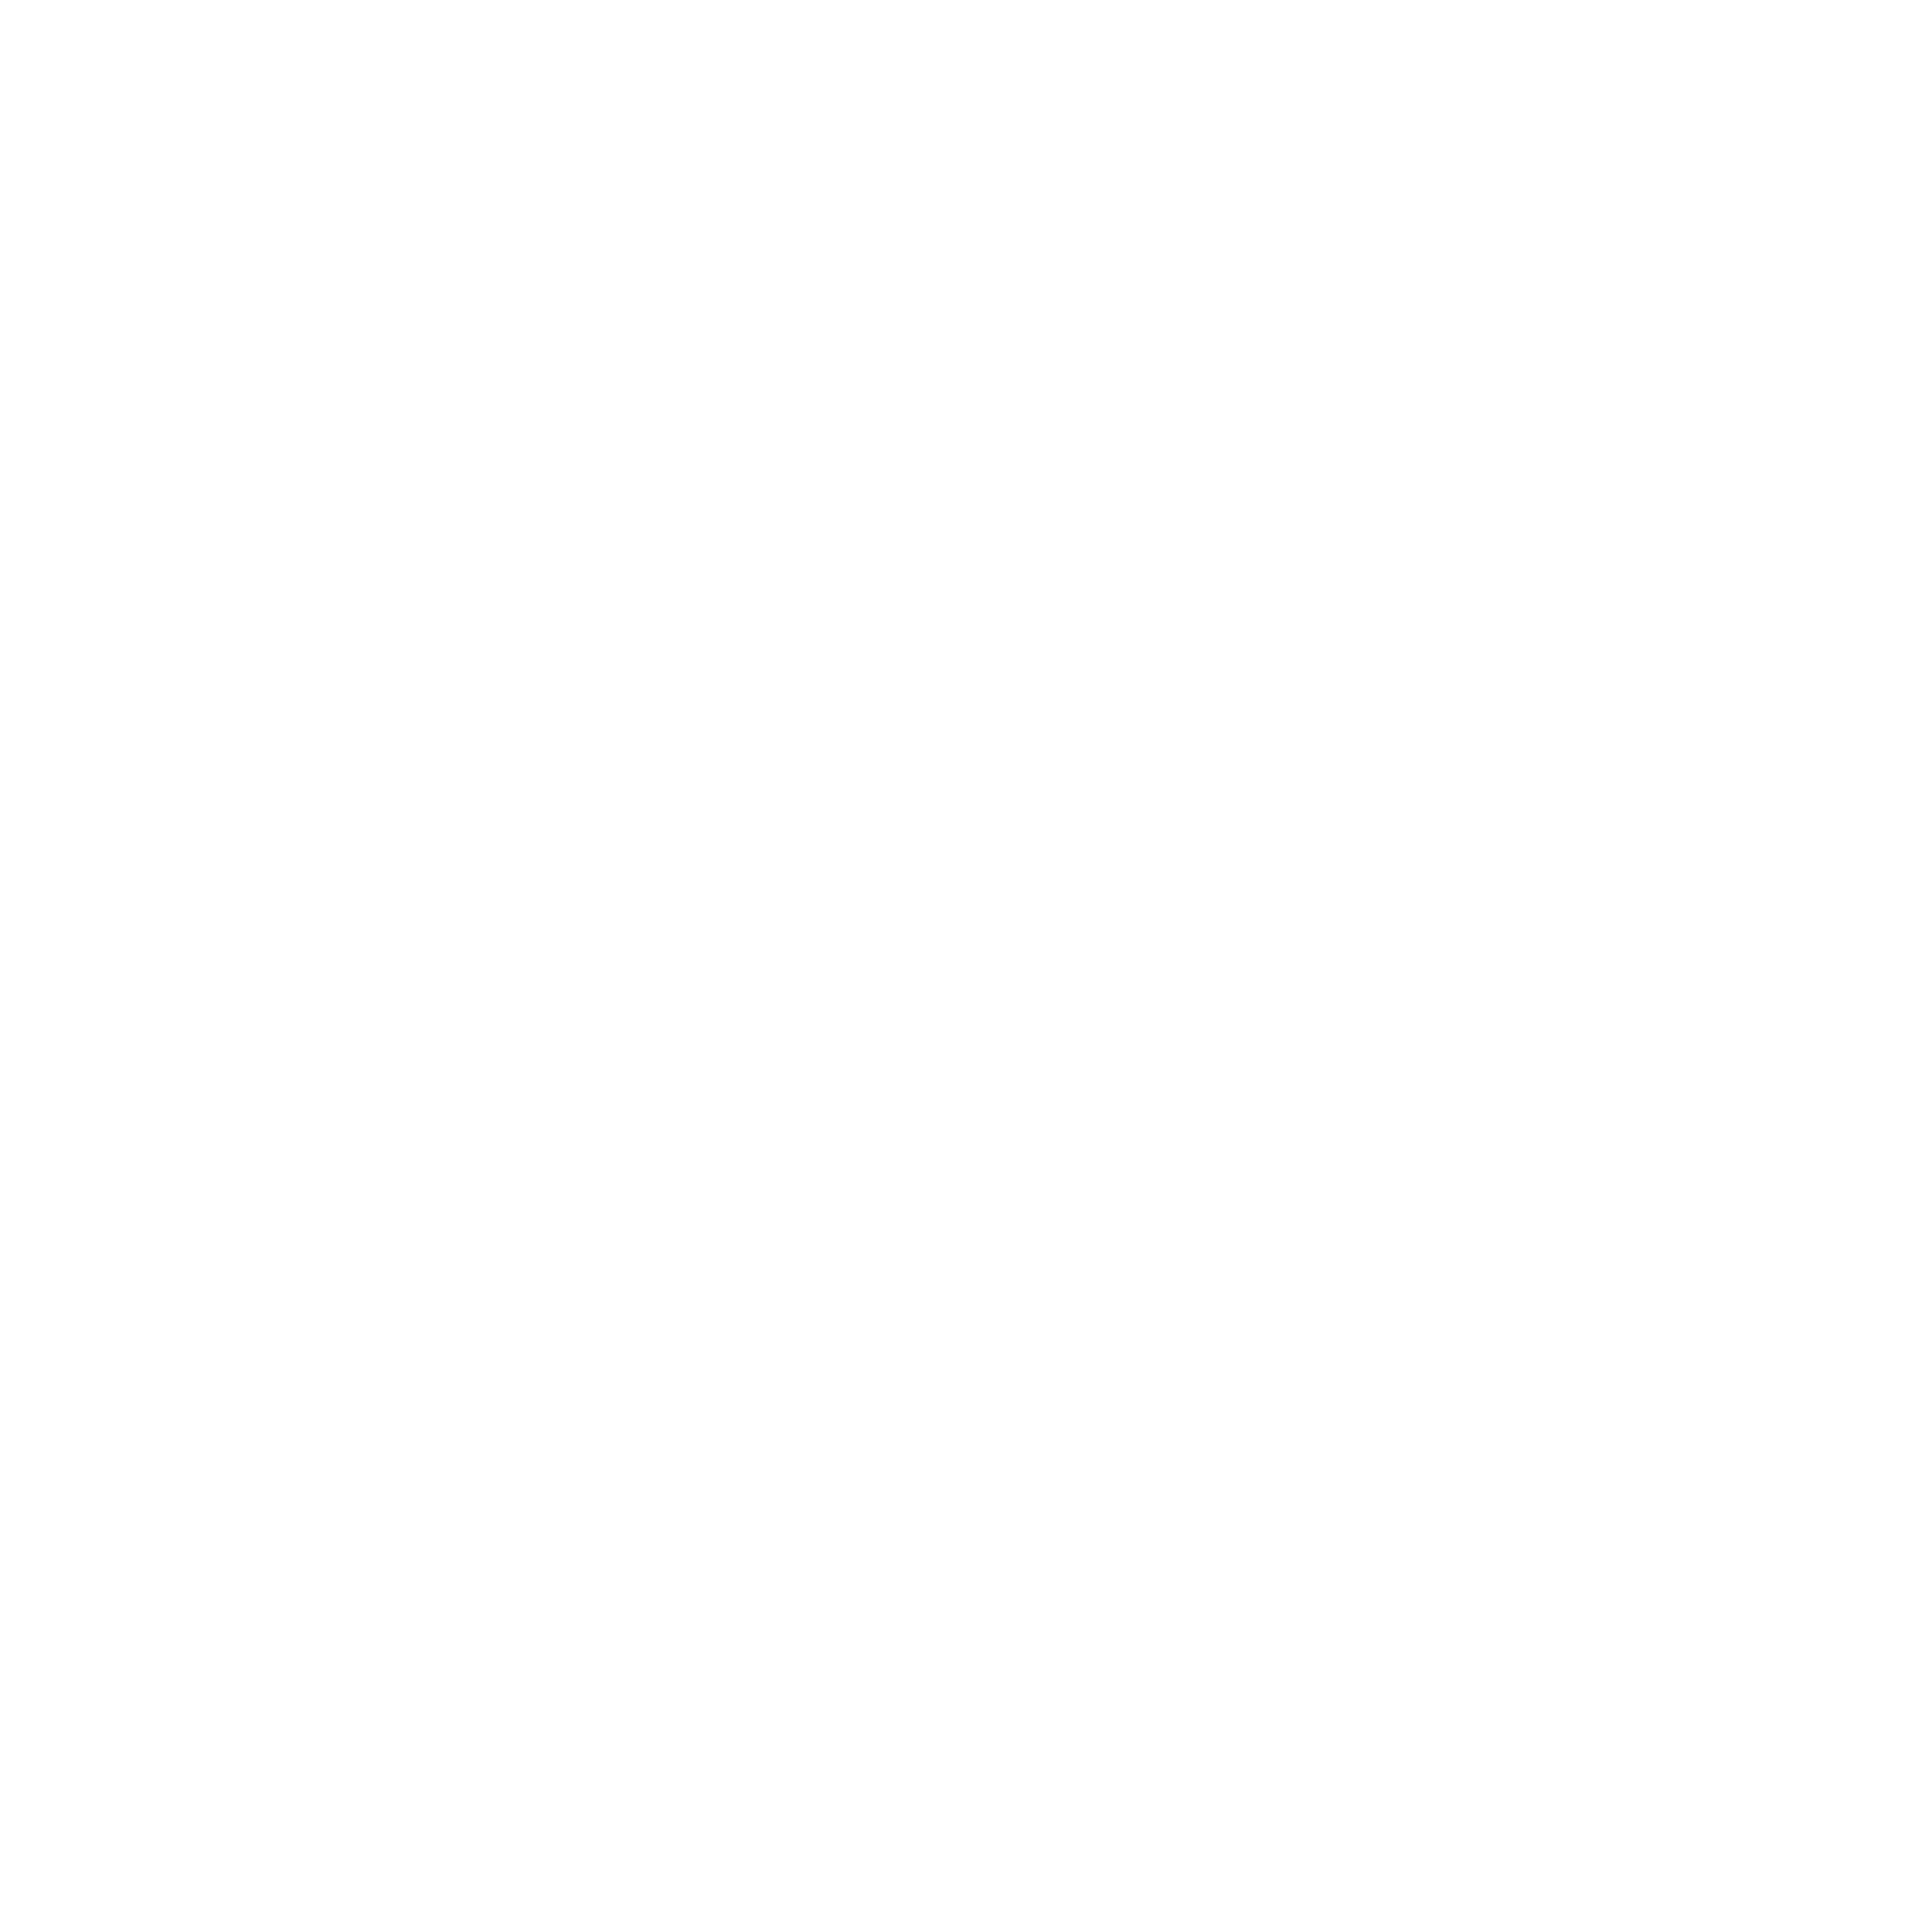 Fntastic Logo Transparent Picture